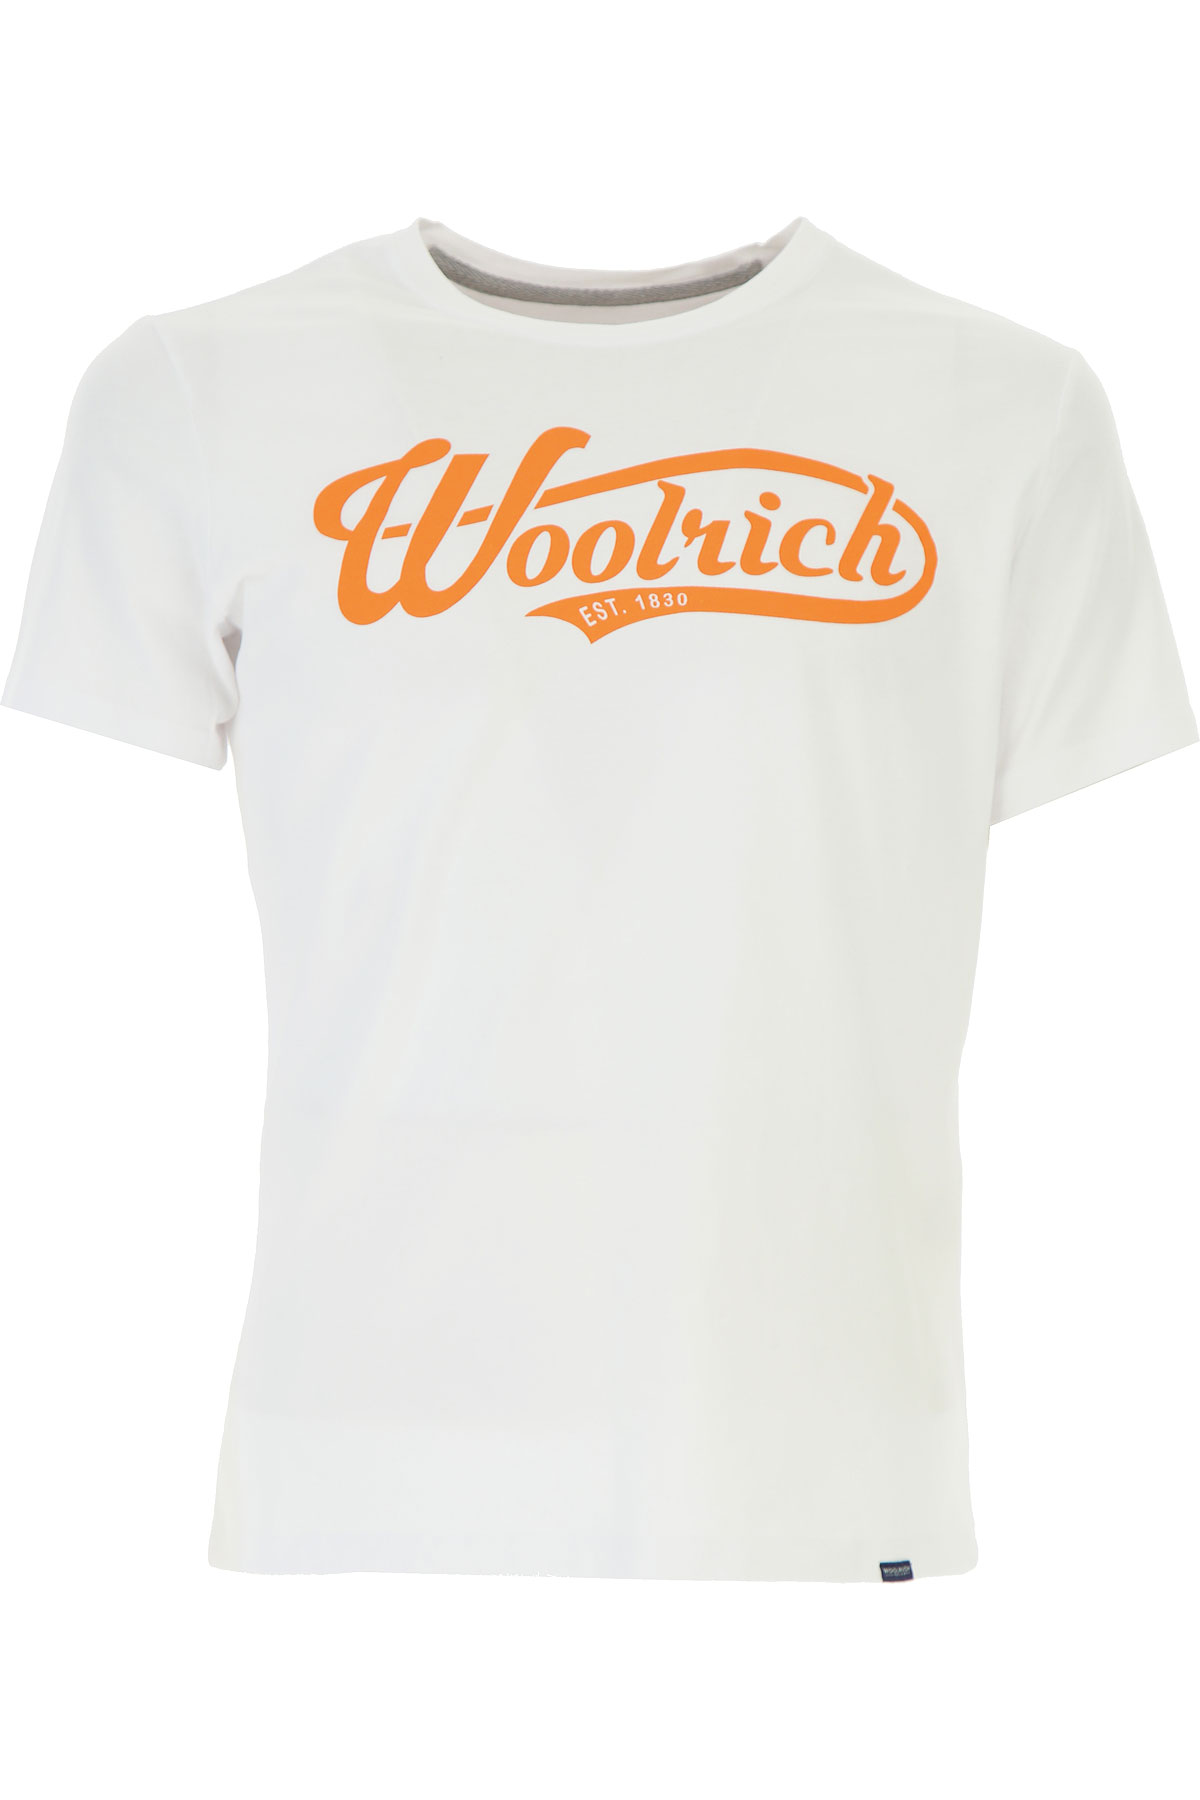 Woolrich T-shirt Homme, Blanc, Coton, 2017, L M S XL